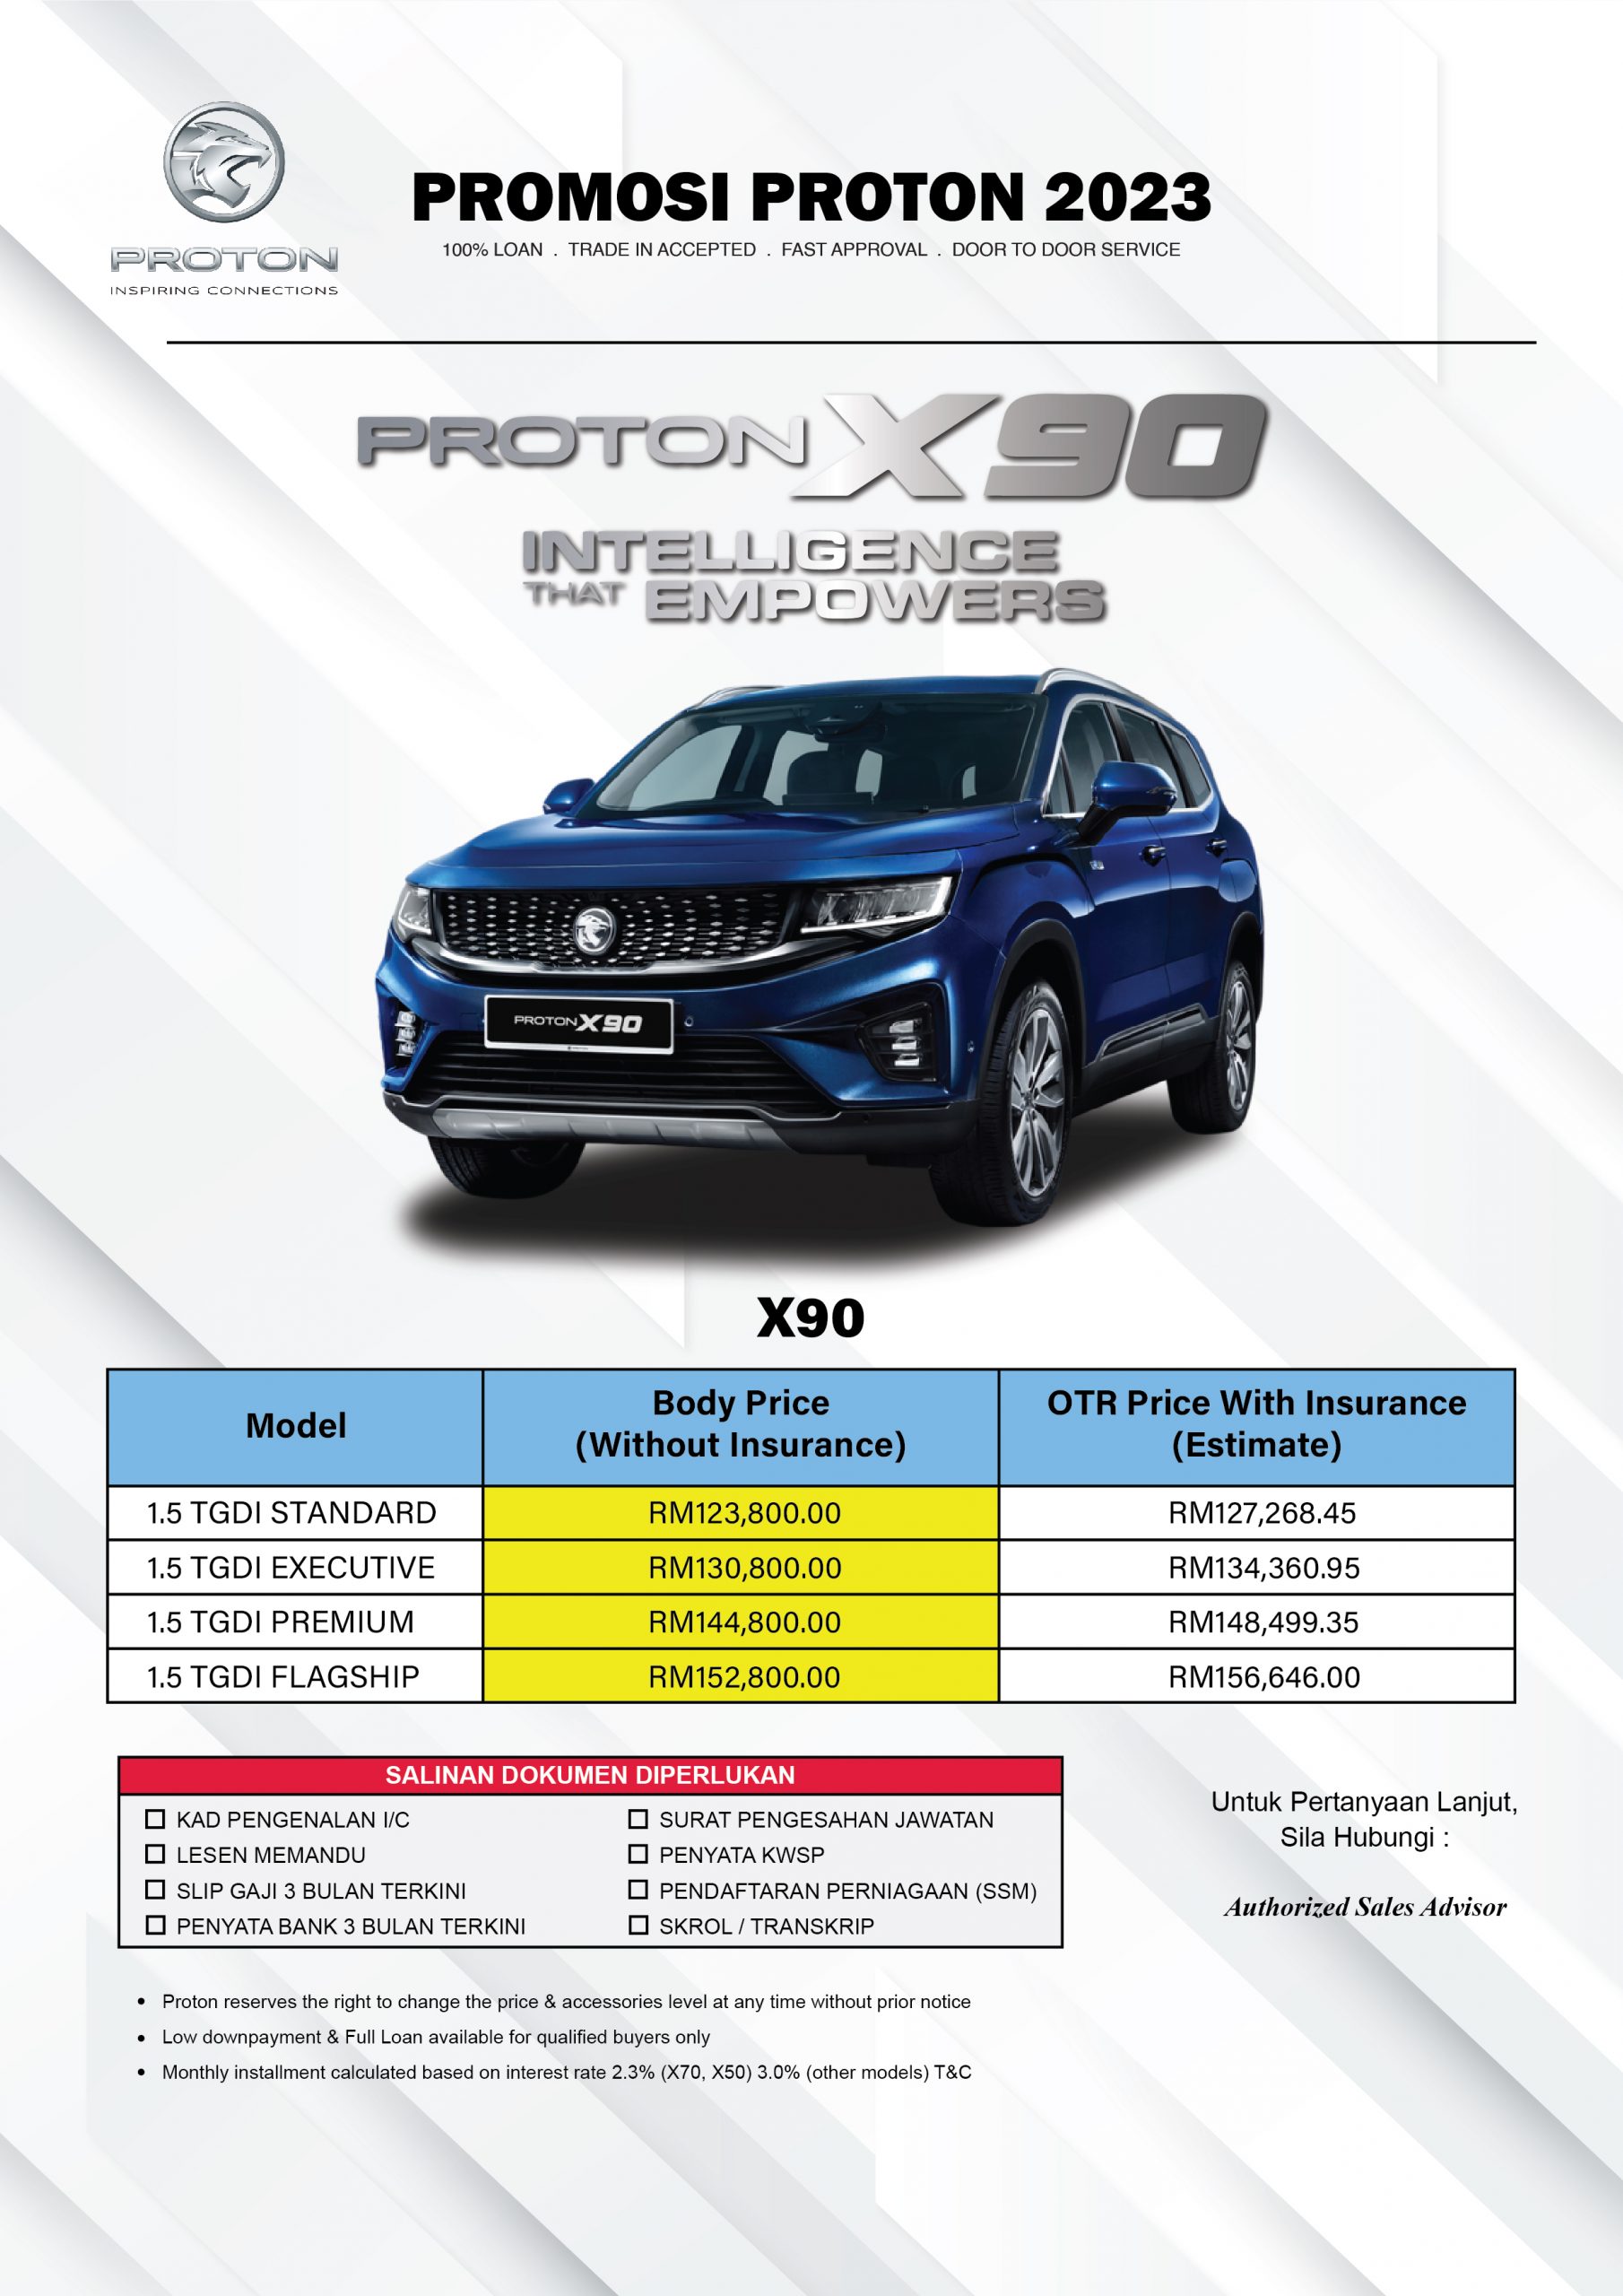 New X90 Price Proton